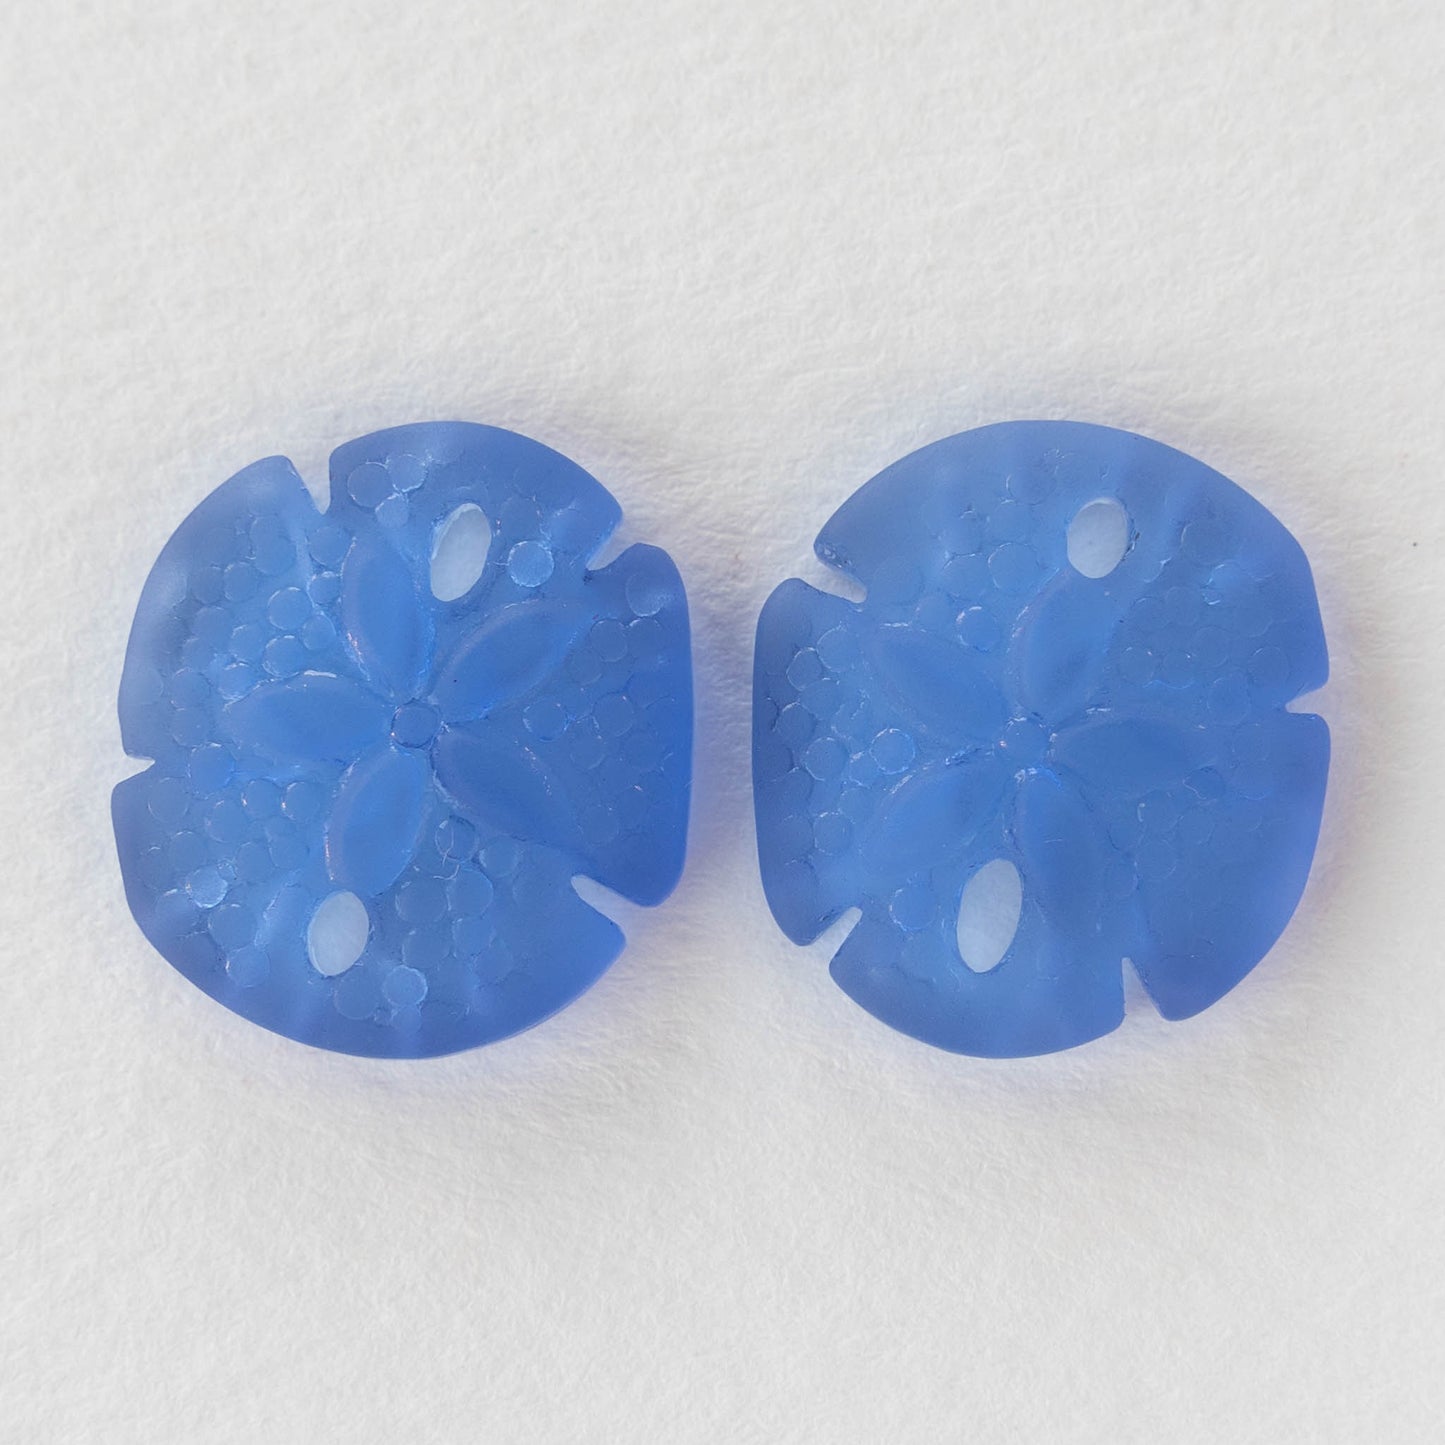 Glass Sand Dollar Beads - Sapphire Blue - 4 Beads